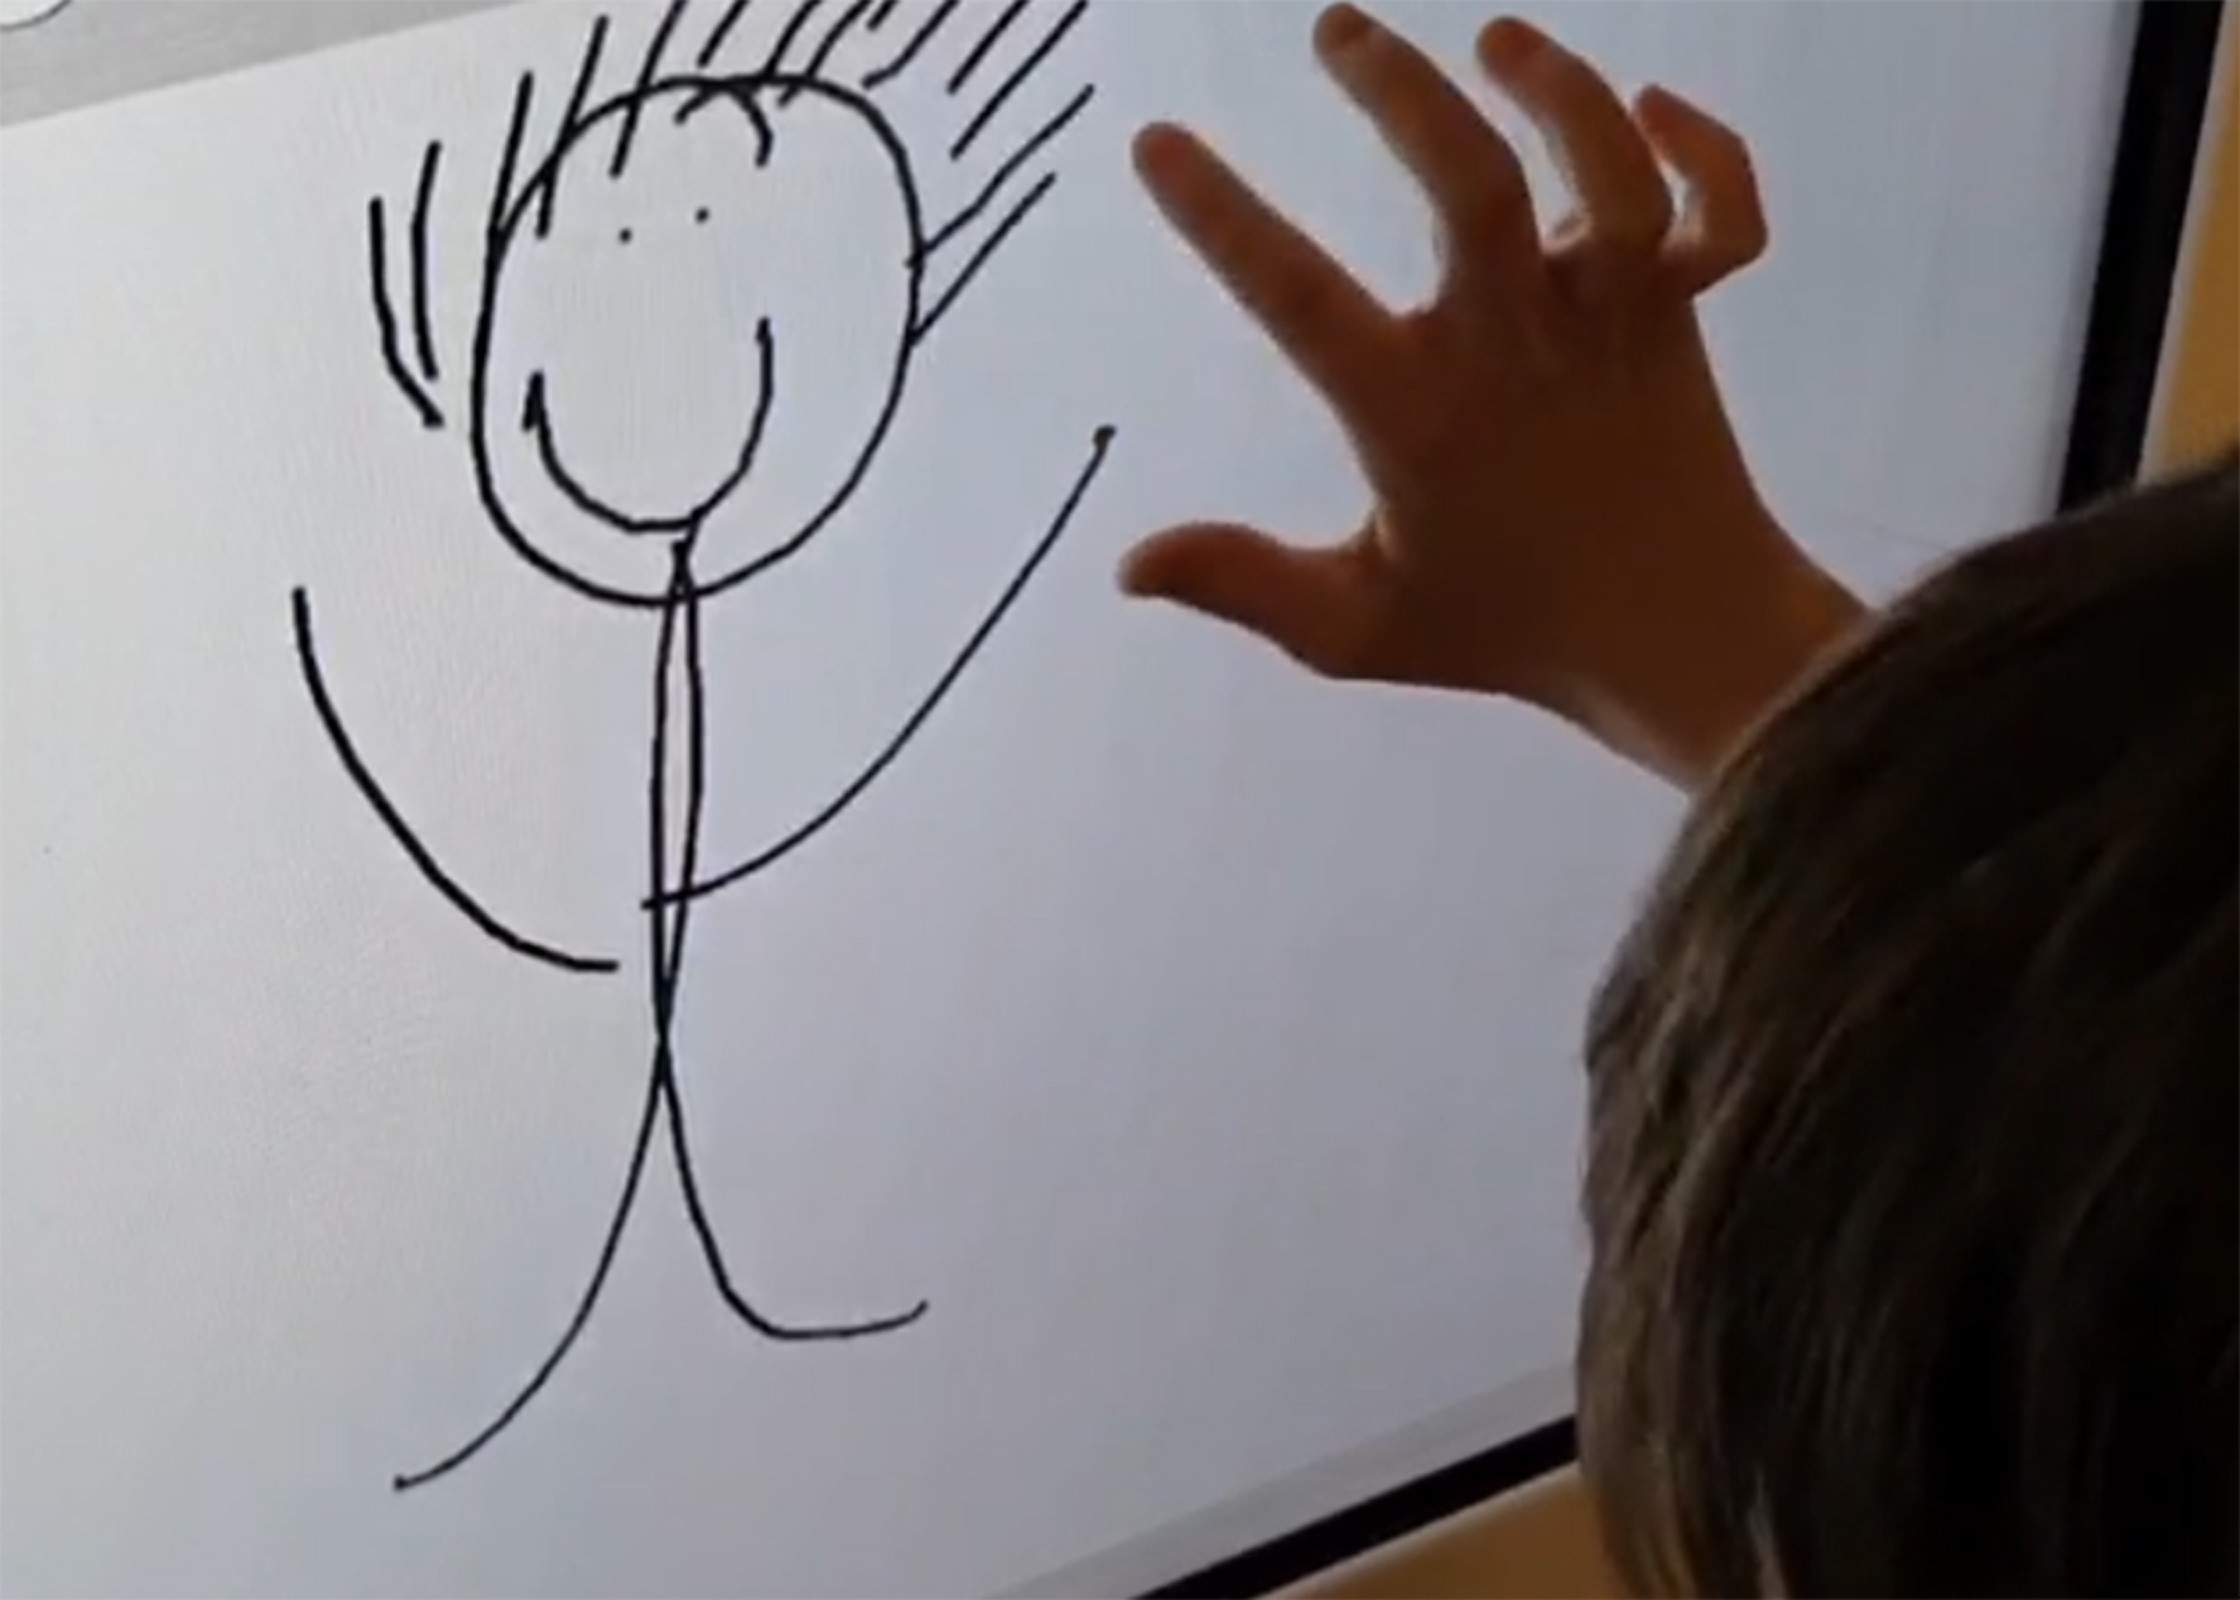 Ein Kind zeichnet mit seinem Finger ein Strichmännchen auf einem Bildschirm.